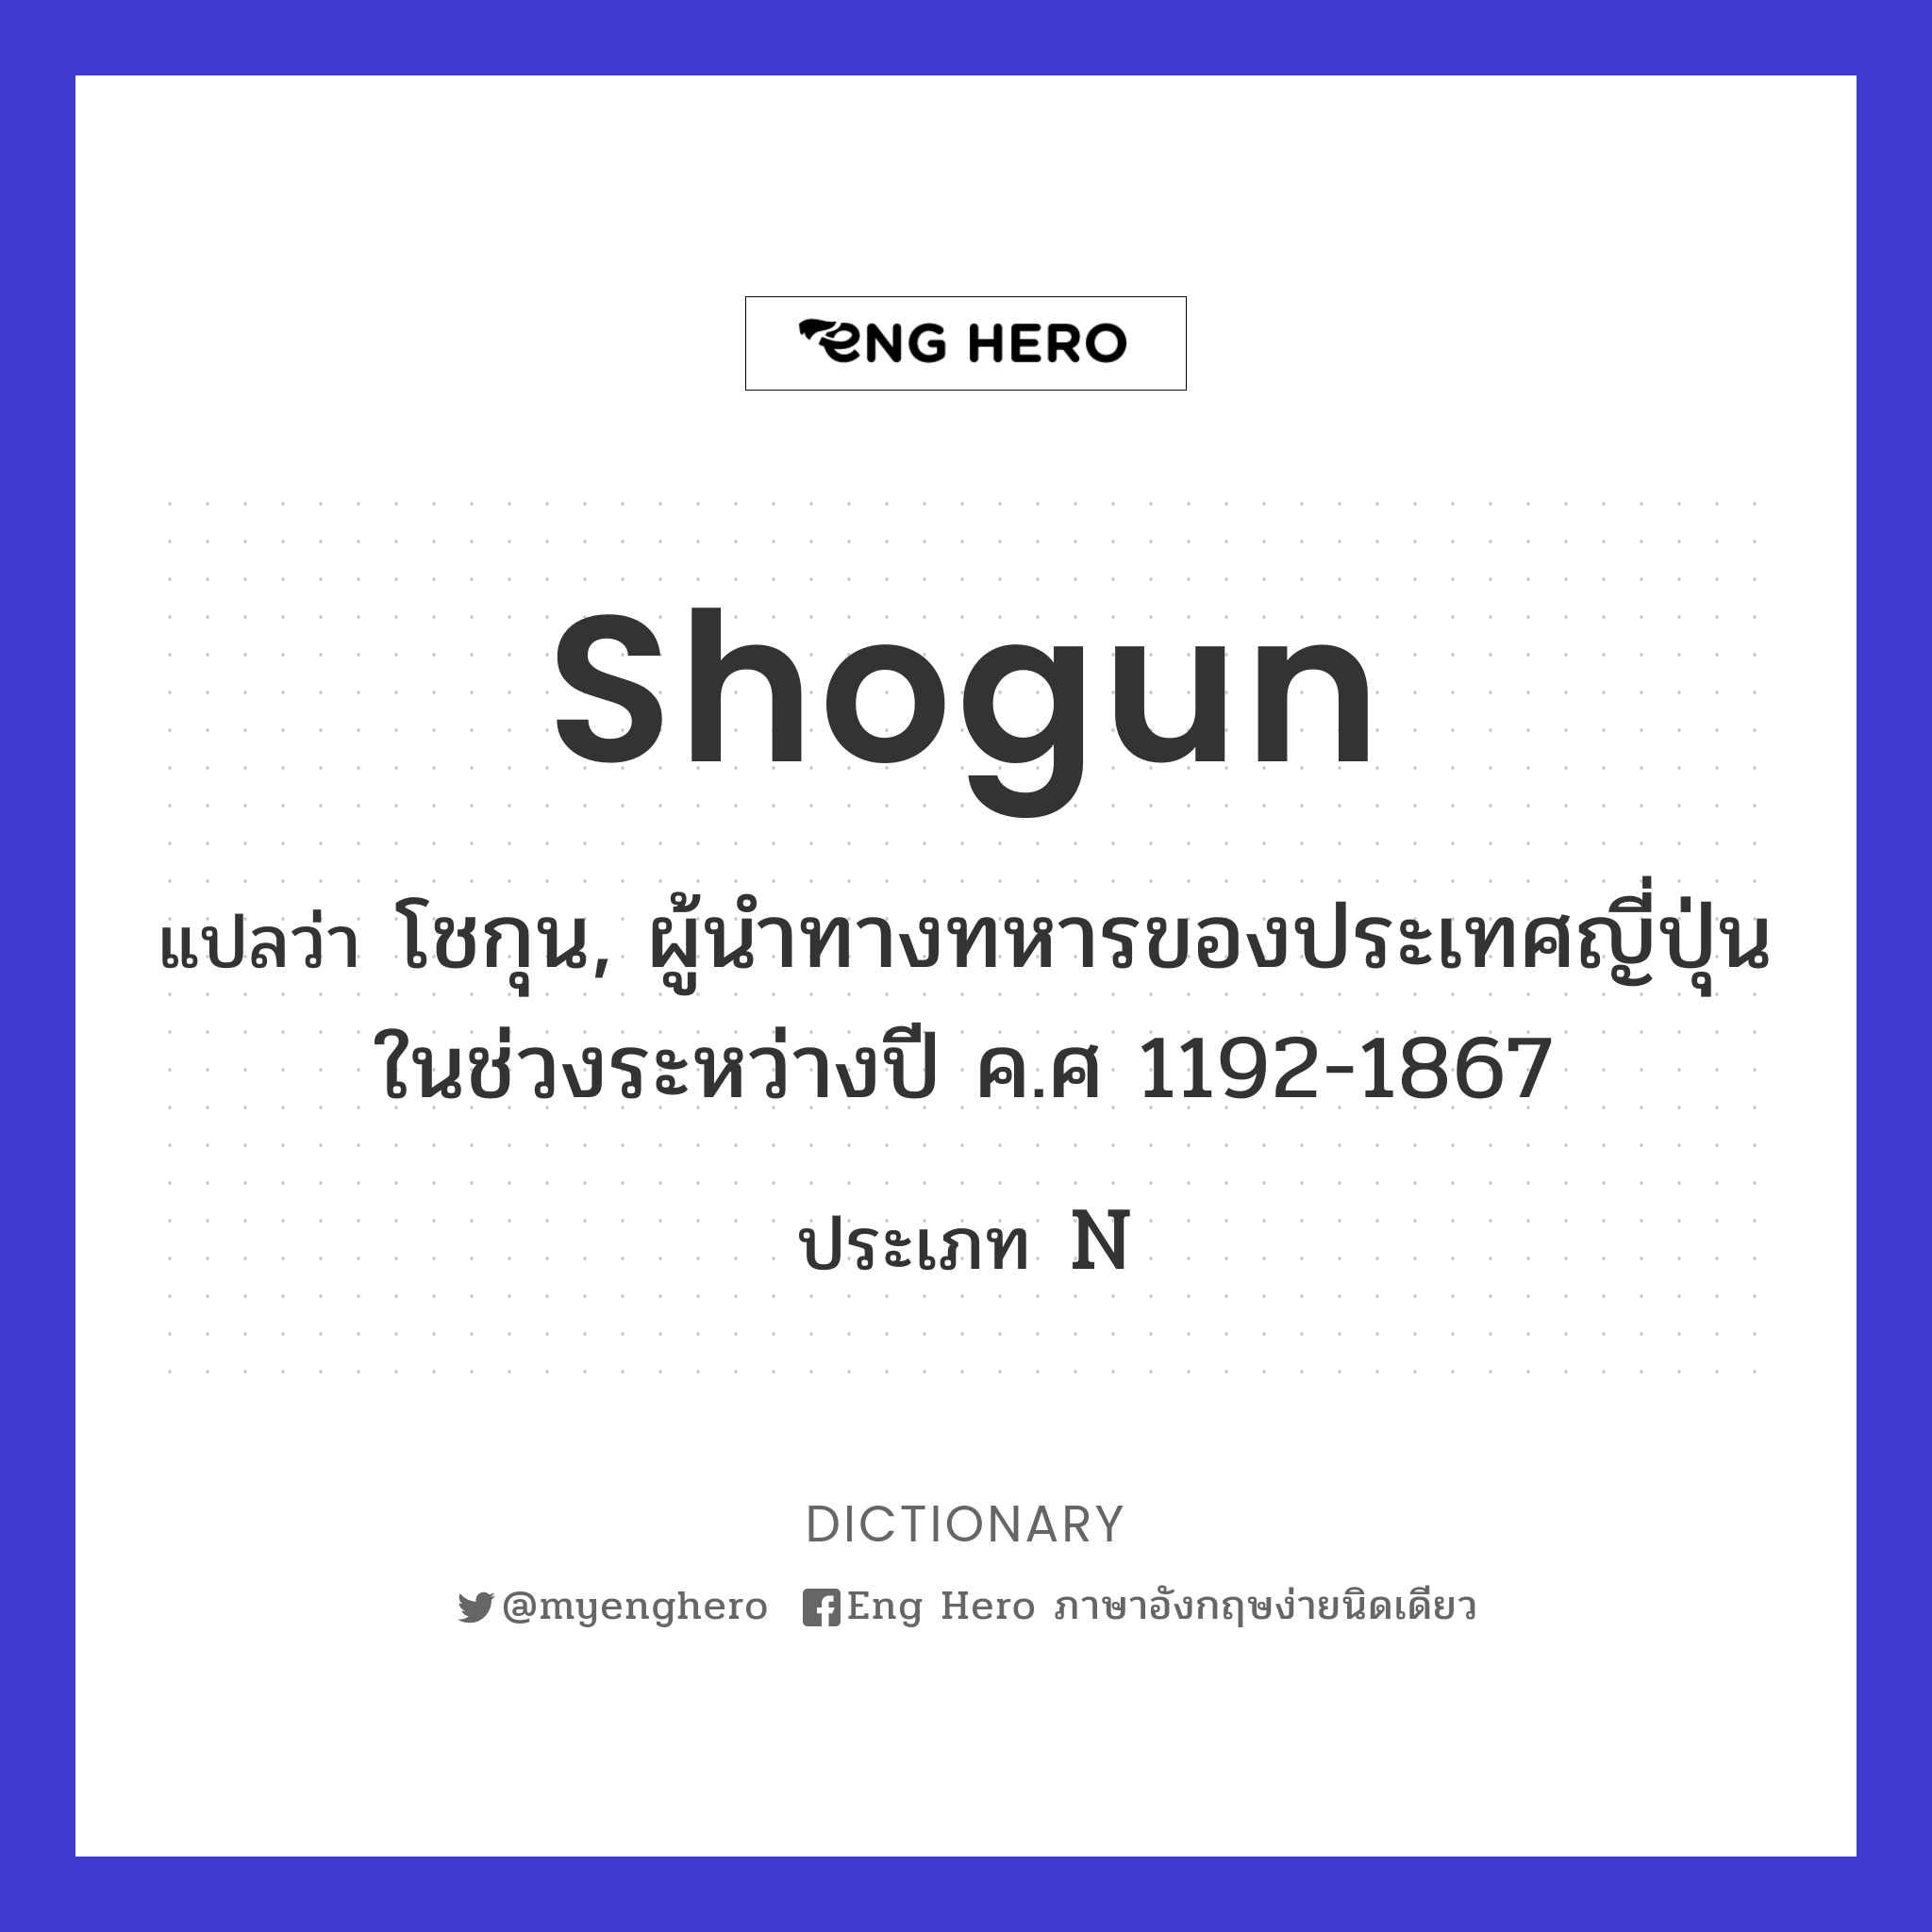 shogun